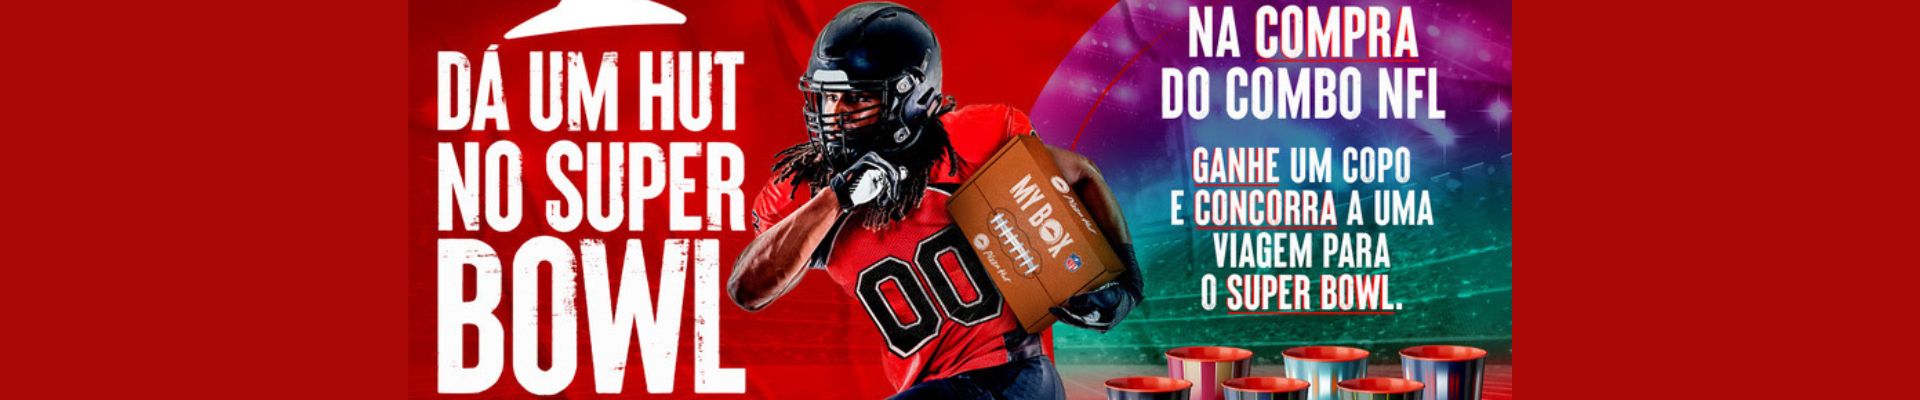 Pizza Hut lança campanha para levar os fãs da NFL ao Super Bowl, em Las Vegas